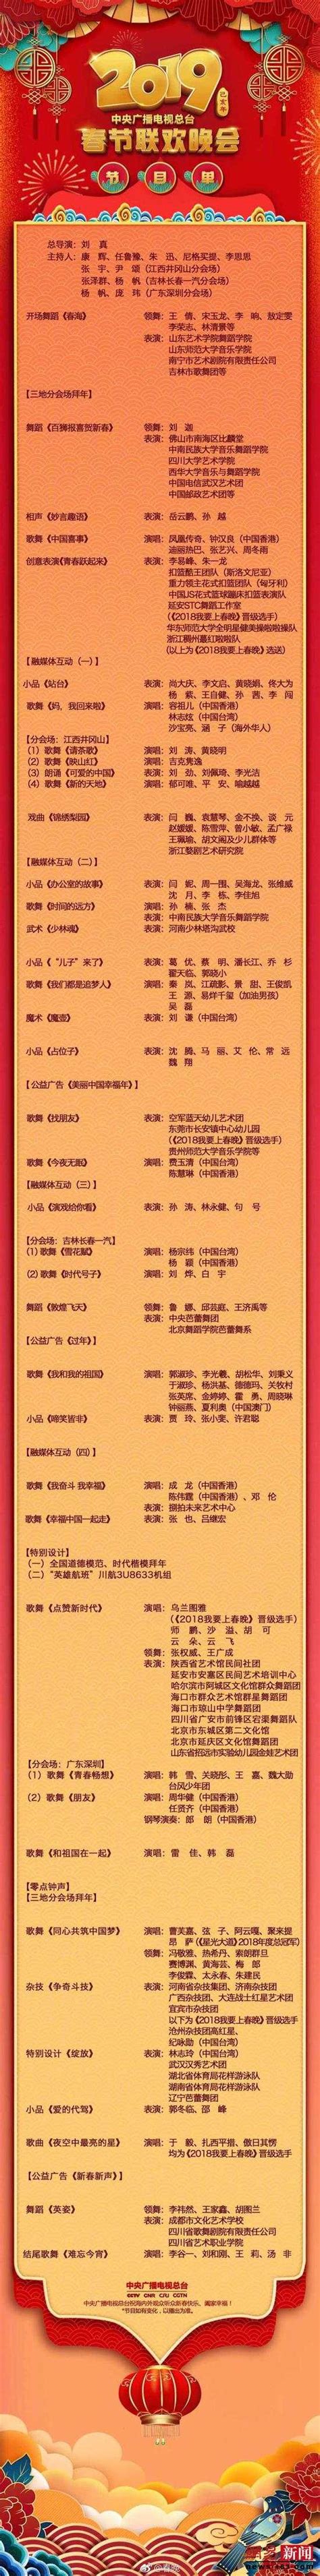 2018央视春晚节目单出炉 星光熠熠阵容强大_滕州冯斌_新浪博客